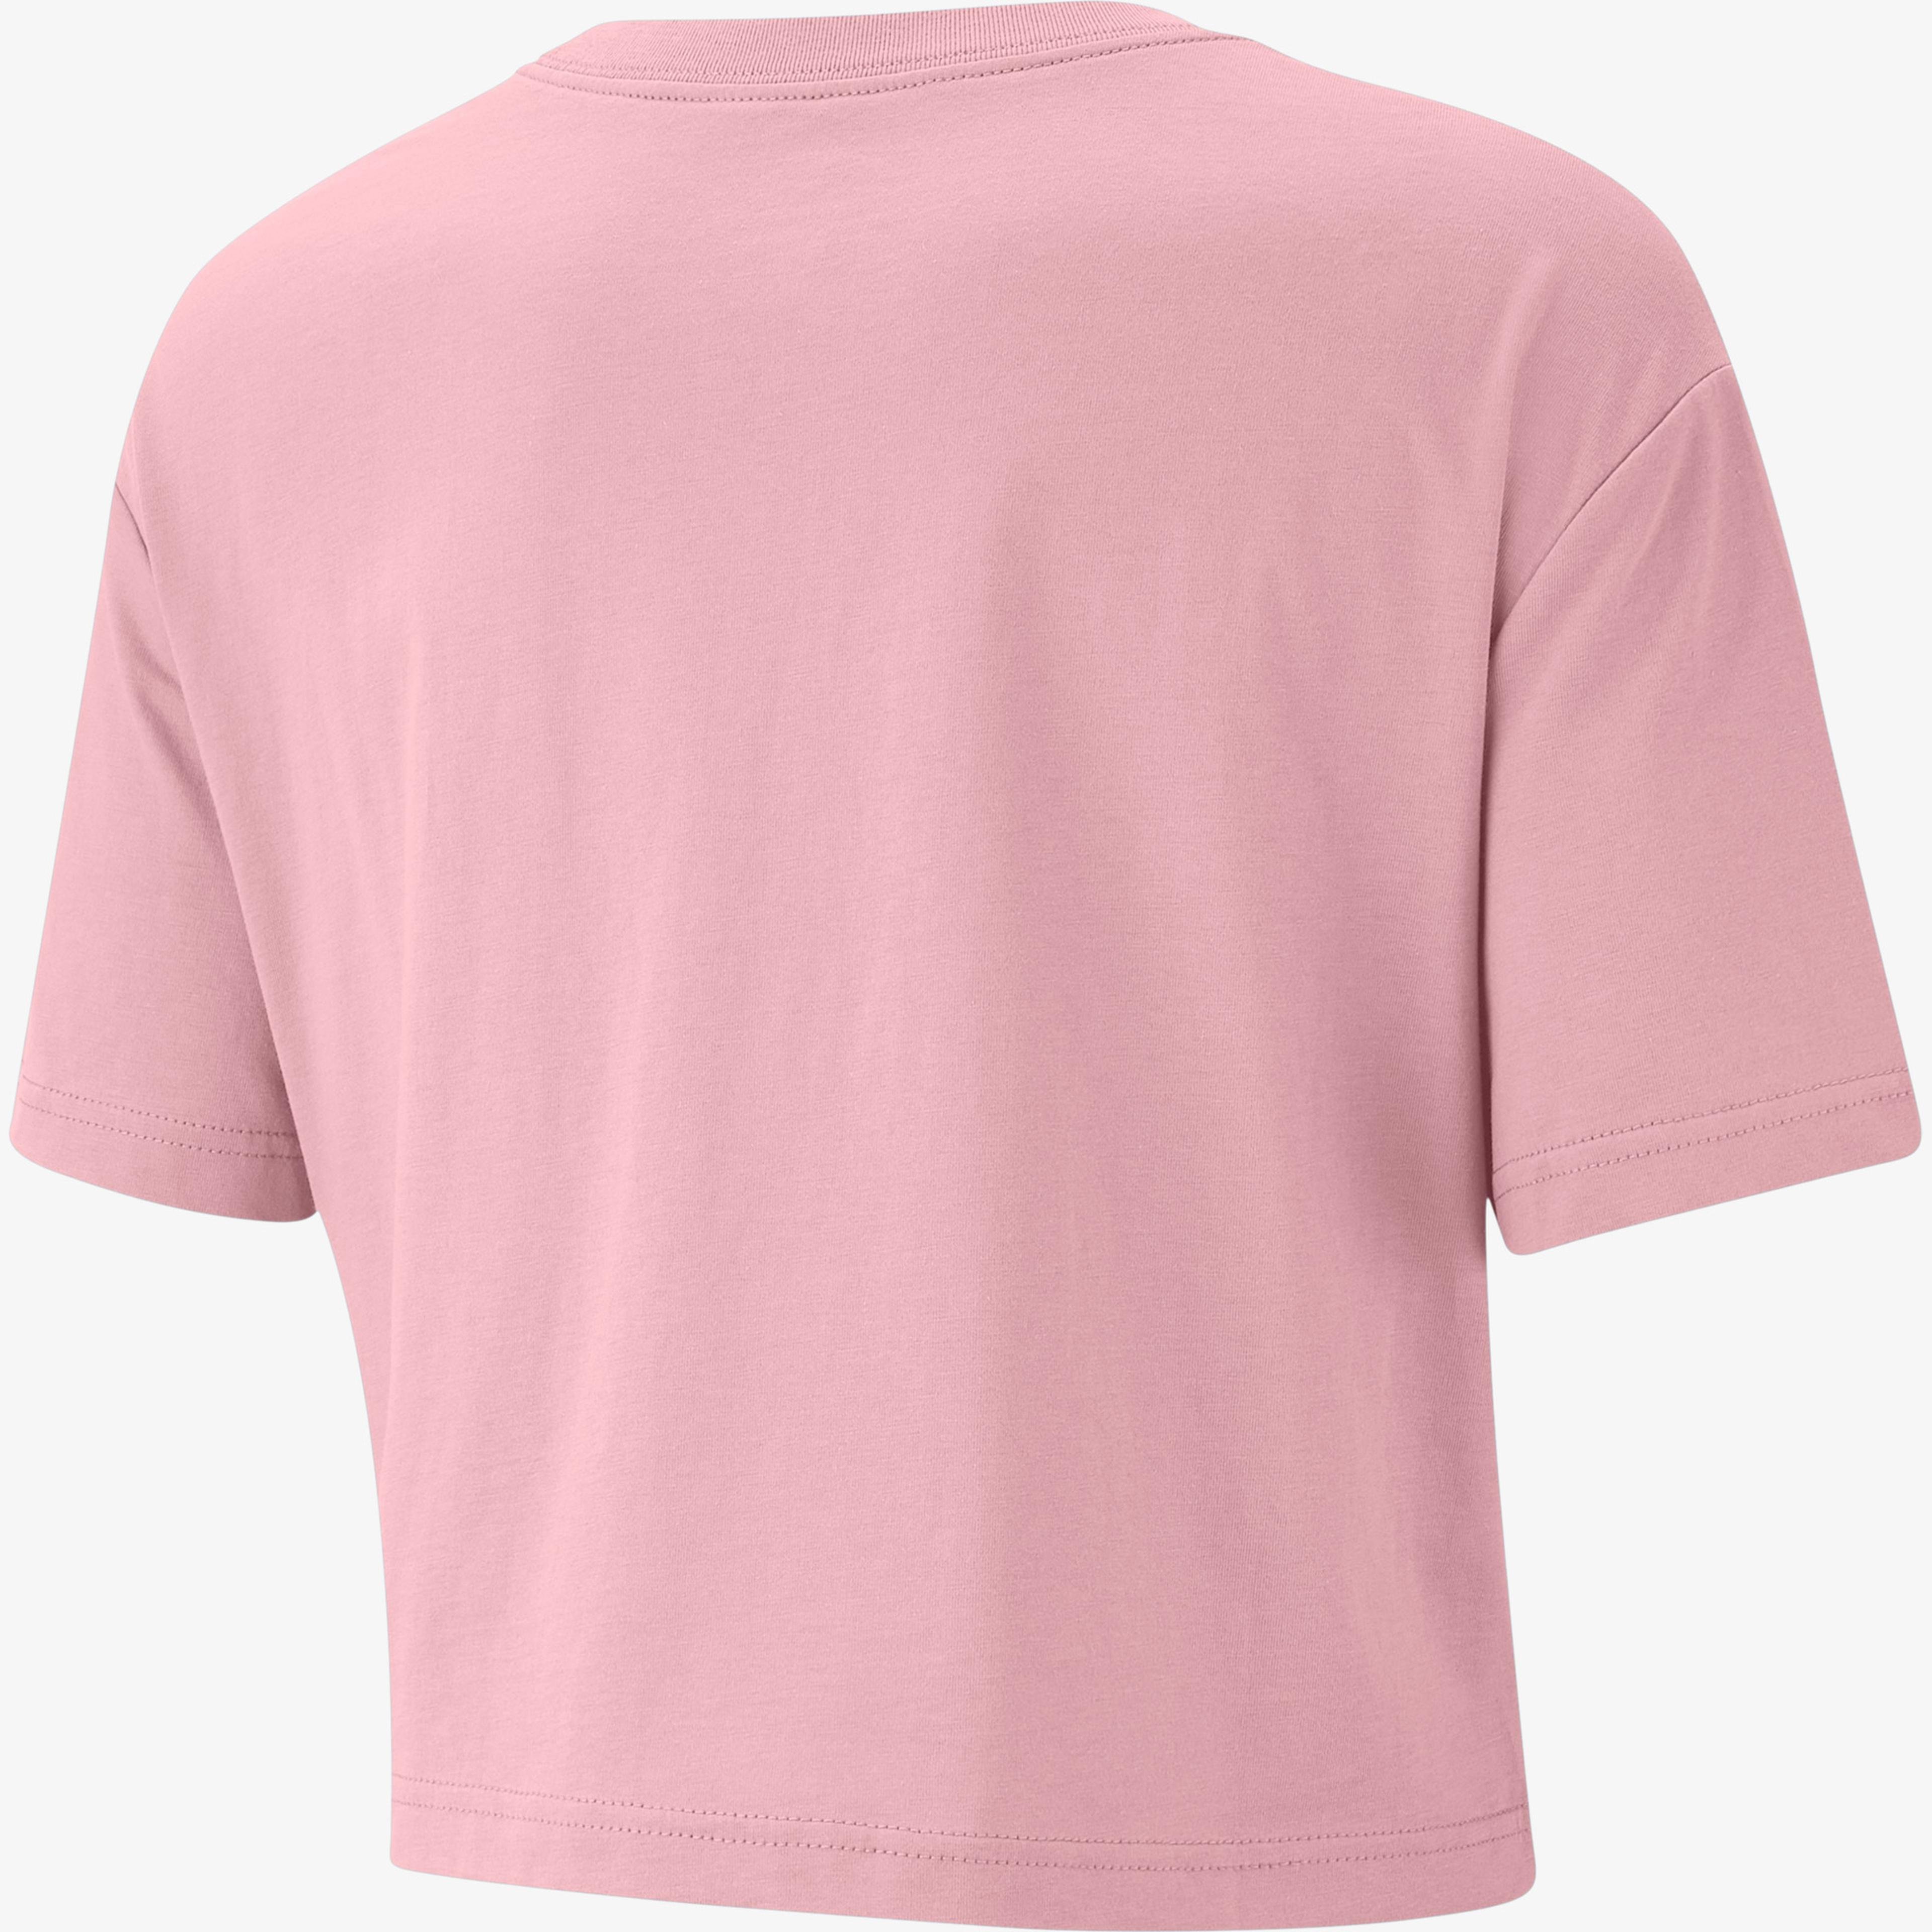 Nike Sportswear Essential Kadın Pembe Cropped T-Shirt